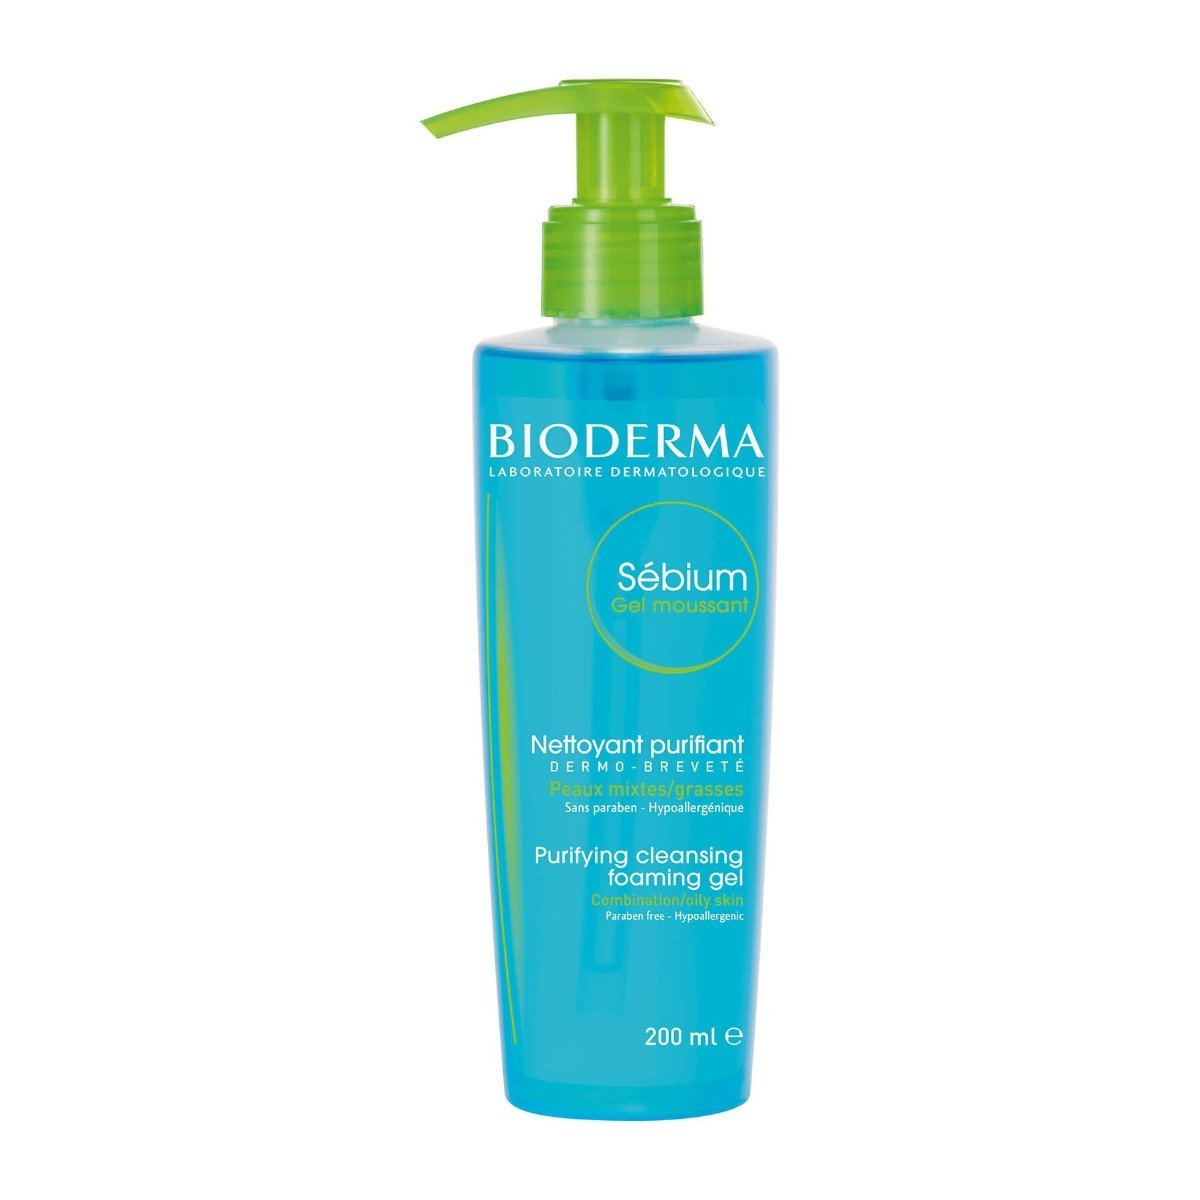 Bioderma Sébium Purifying Cleansing Foaming Gel 200ml - Bloom Pharmacy